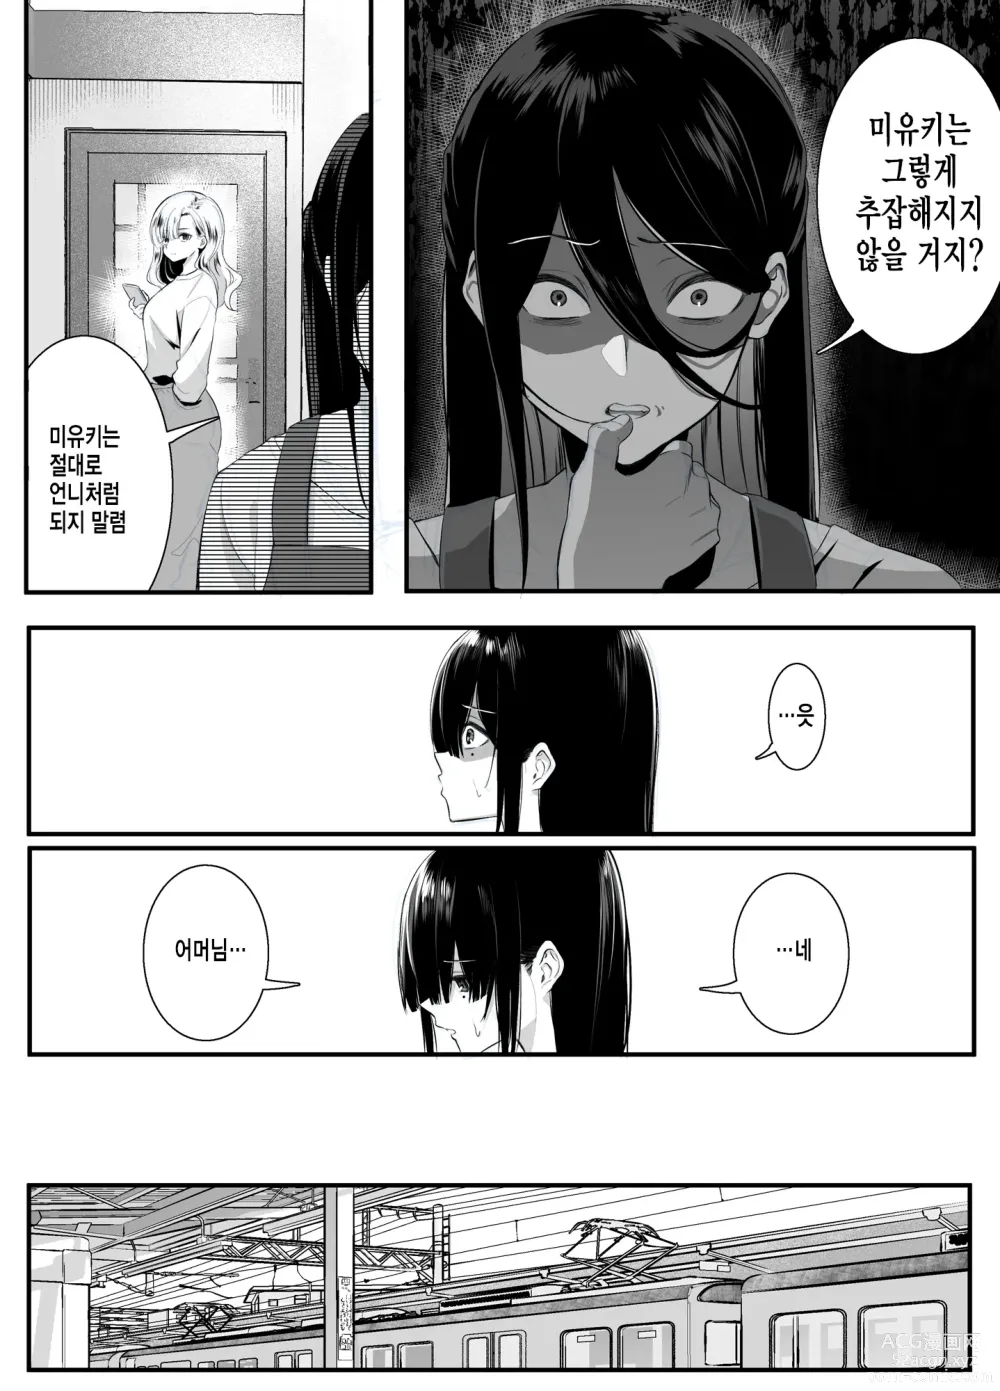 Page 5 of doujinshi 불순 이성 교유를 하면 즉시퇴학인 청순무구한 여고생에게 장난치기